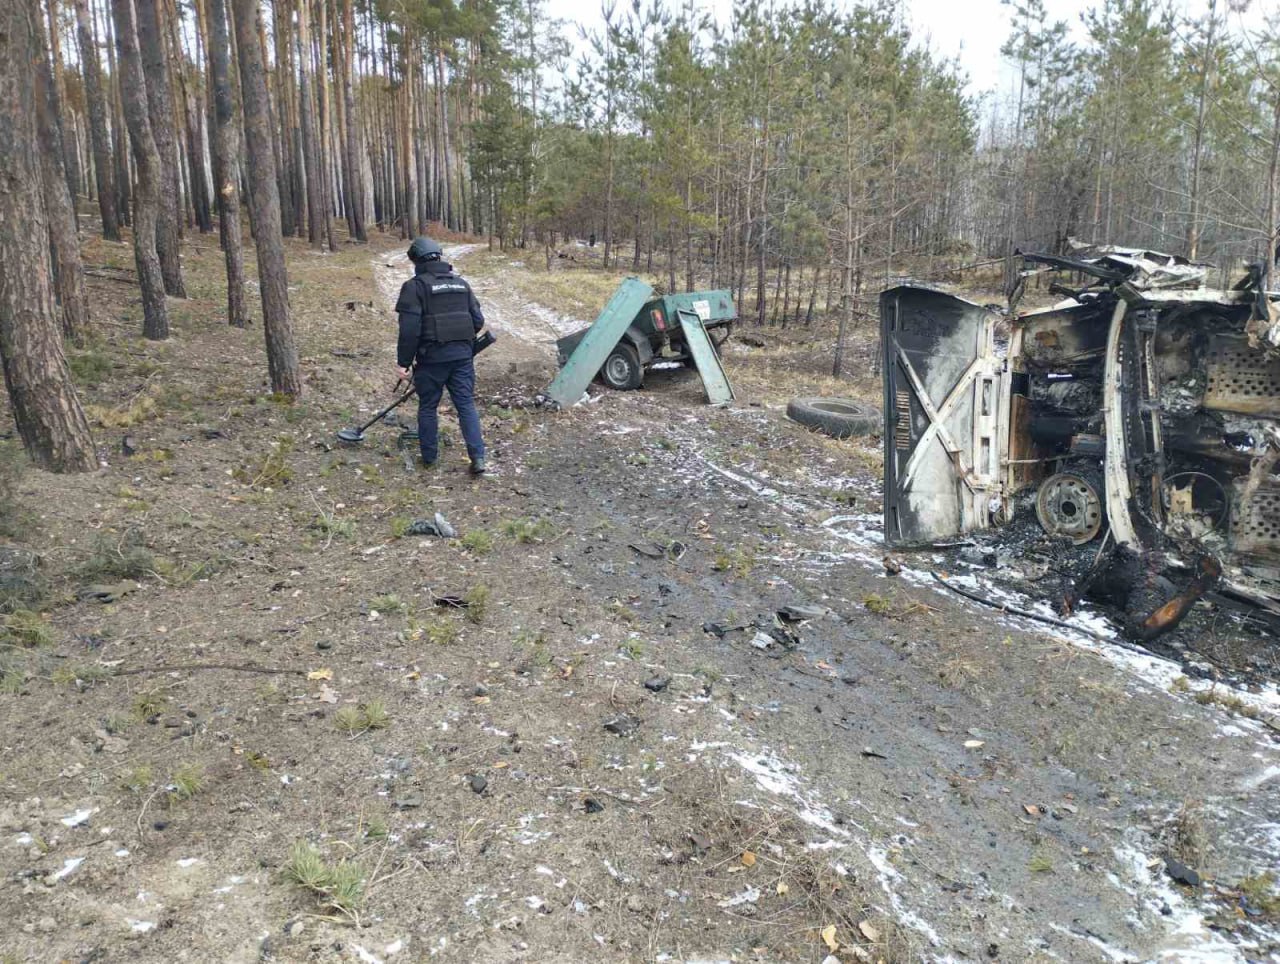 Трагедія сталася 1 березня, повідомляє поліція. Автомобіль "ВАЗ 2121" під керуванням 39-річного мешканця міста Ізюм рухався лісною дорогою та наїхав на невідомий вибуховий пристрій.